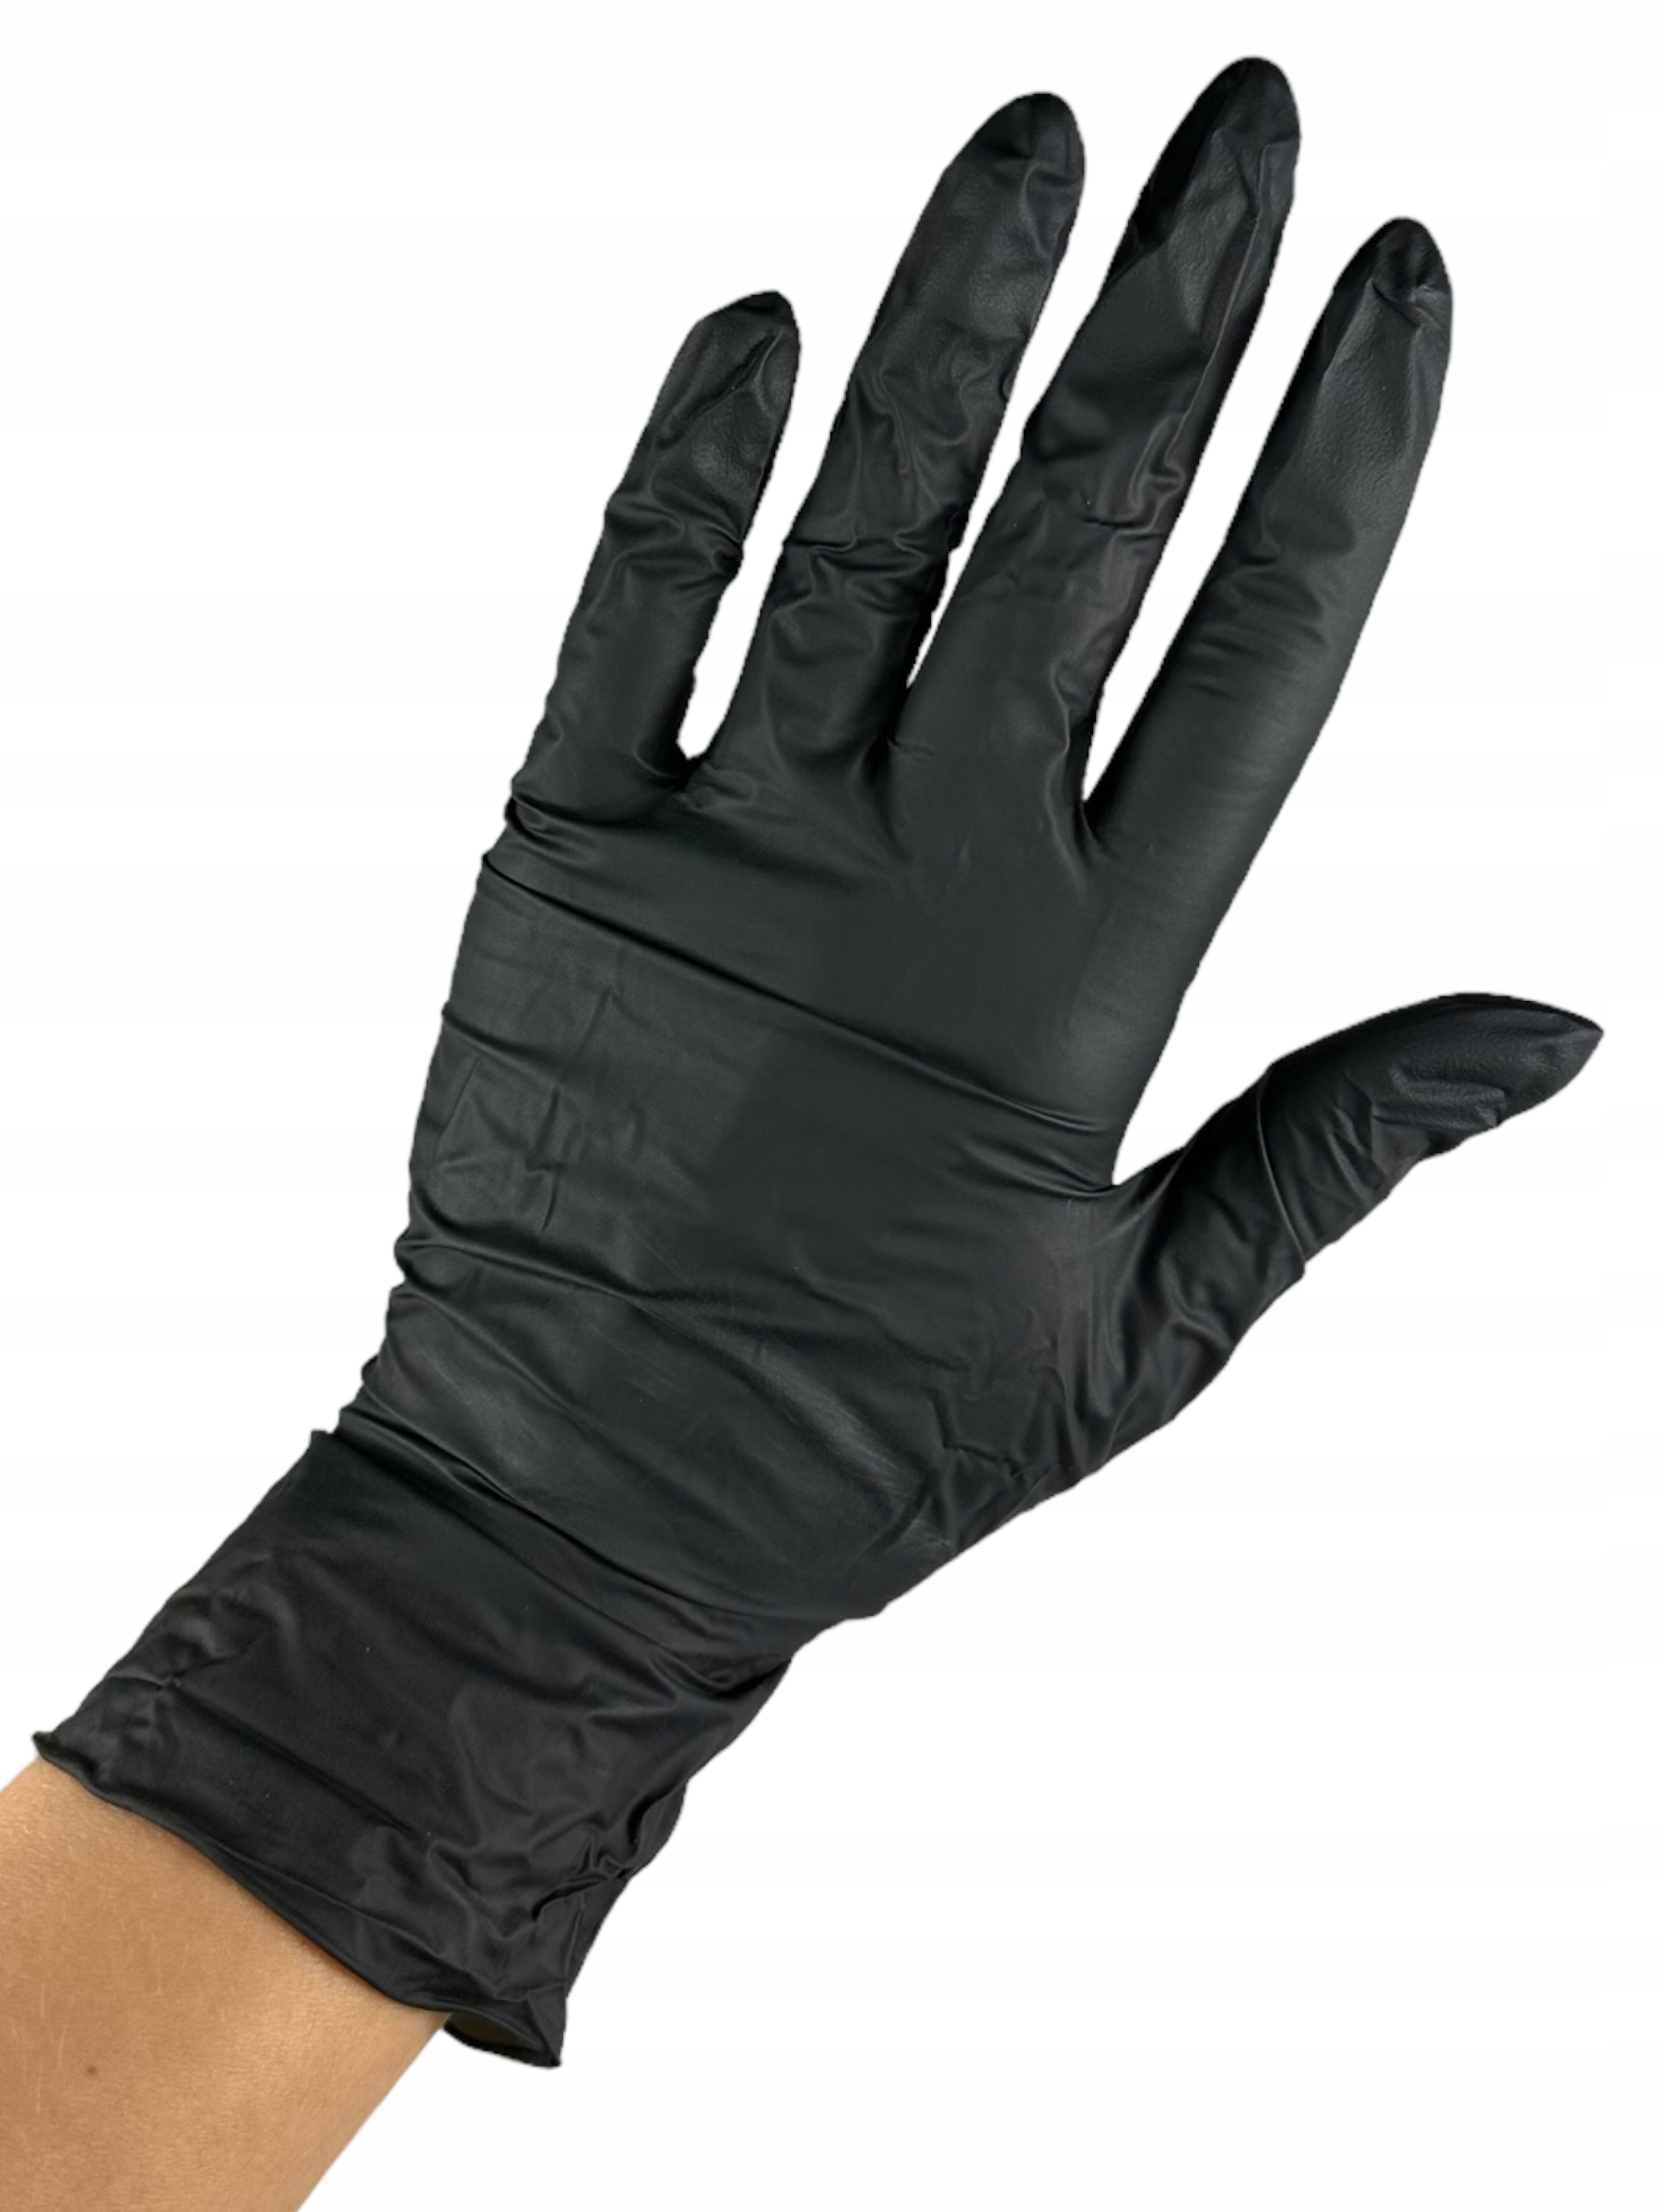 Rękawiczki czarne nitrylowe rozmiar L 100 SZTUK na cele medyczne PLAST Kolor dominujący czarny